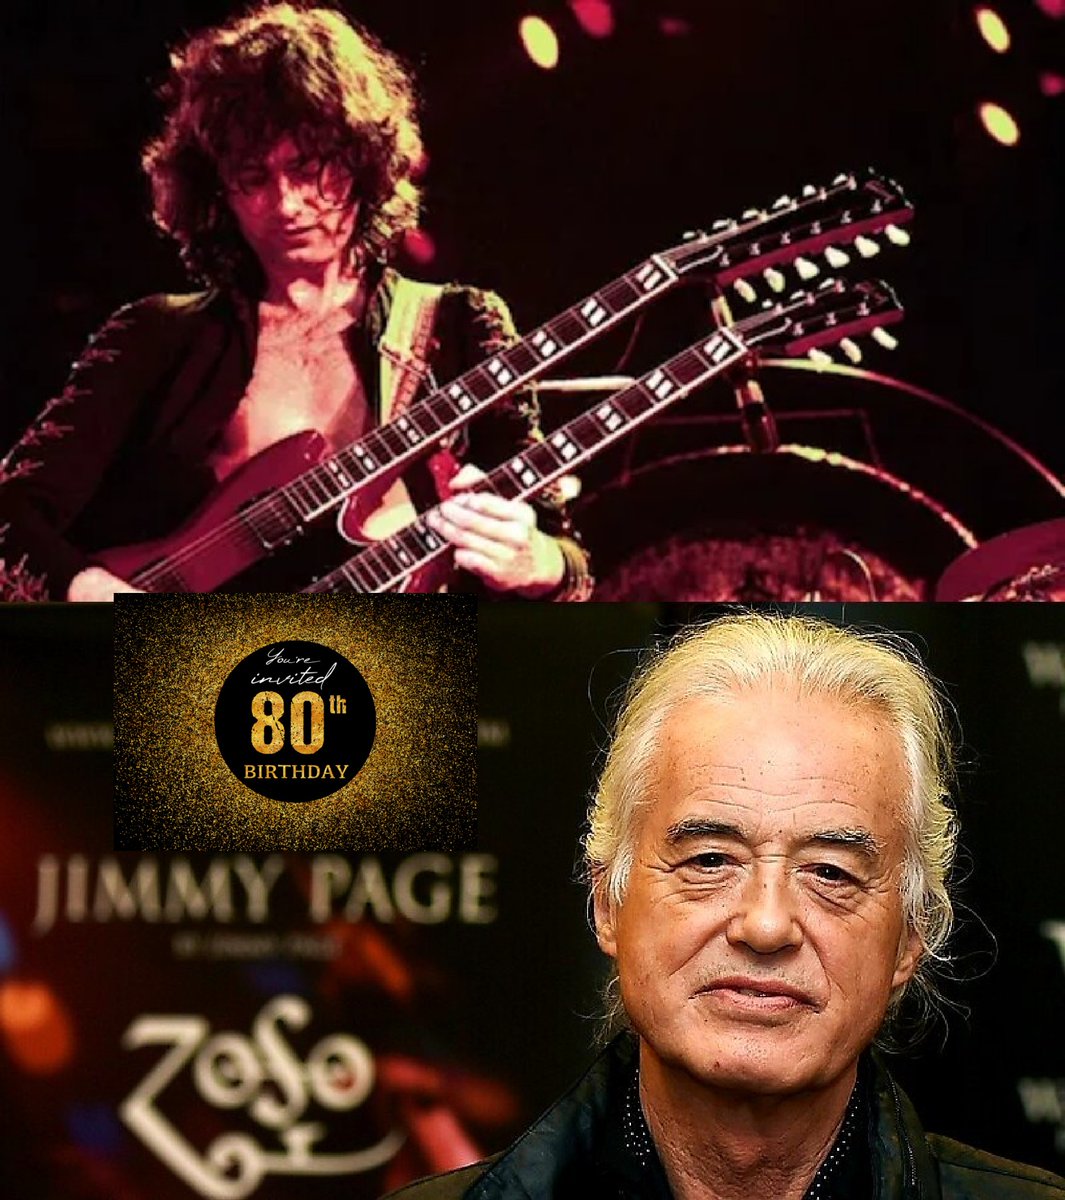 #9gennaio 1944: 80 anni per #JimmyPage. Tra i più influenti chitarristi e compositori del rock. Nella Rock'n'roll Hall of Fame con Yardbirds e #LedZeppelin.

«Un riff dovrebbe essere piuttosto ipnotico, perchè sarà suonato ripetutamente».

'Kashmir'
▶ youtu.be/0wEXecYxEHI?si…